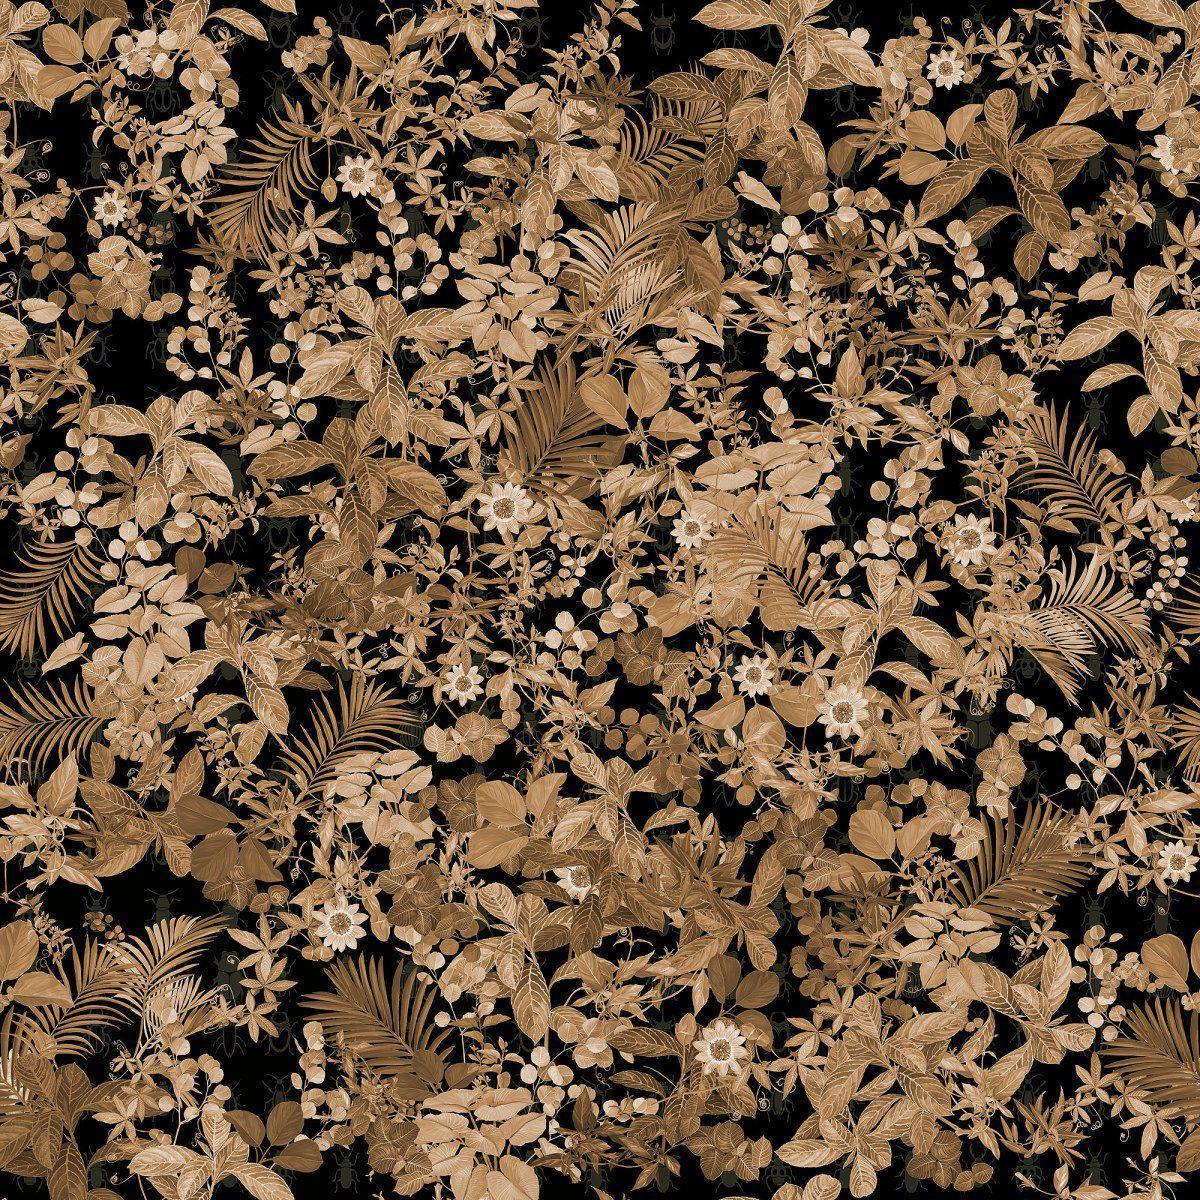 Tropicana-Digital Wallpaper-Tecnografica-Gold 2-70838-2B